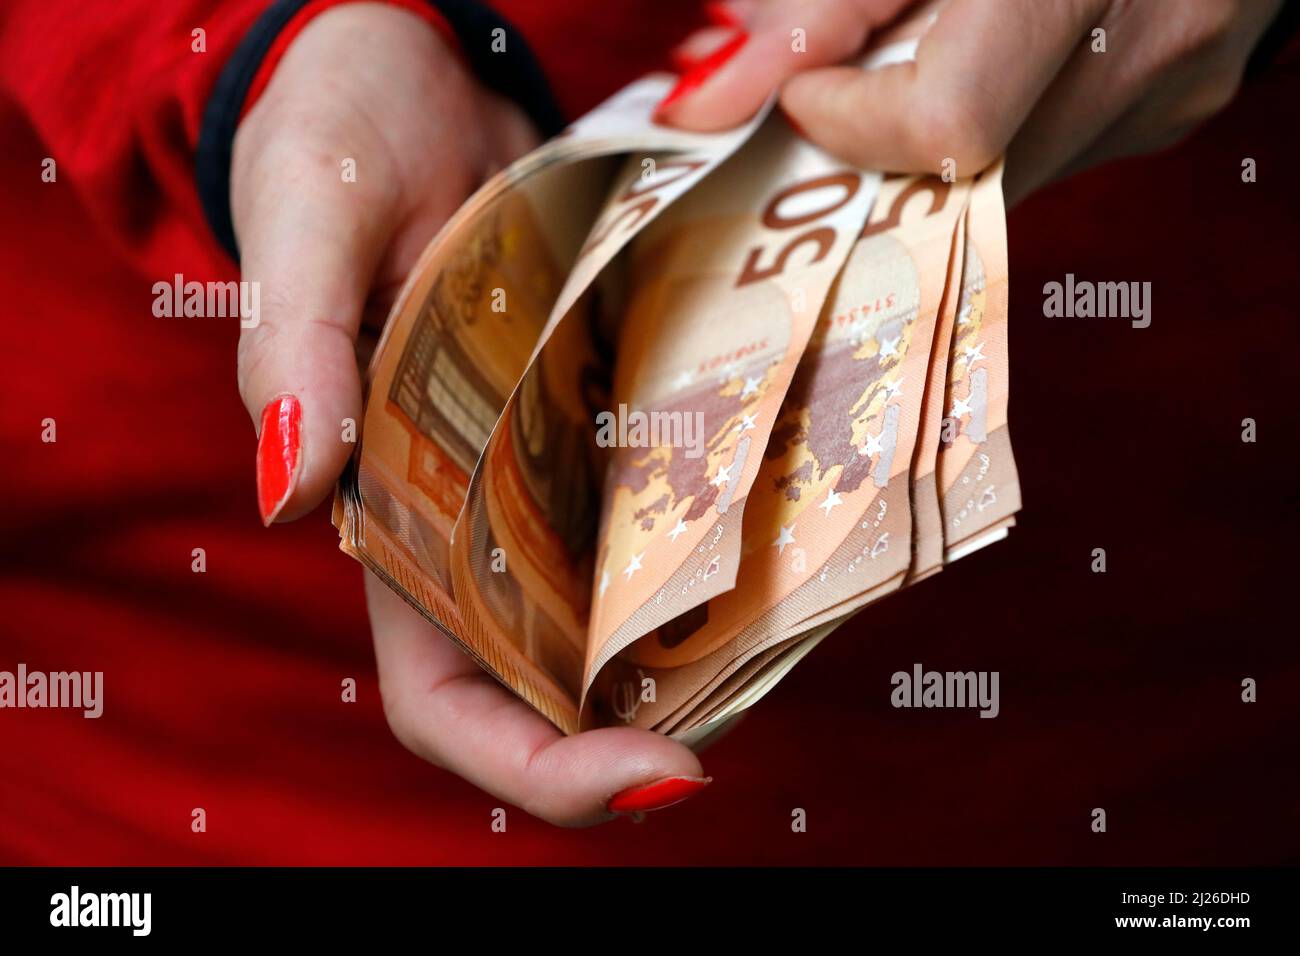 Frau hält Geldscheine der Euro-Währung. Zahlungs- und Bargeldkonzept. Konzept von illegalem Geld und Gier. Stockfoto